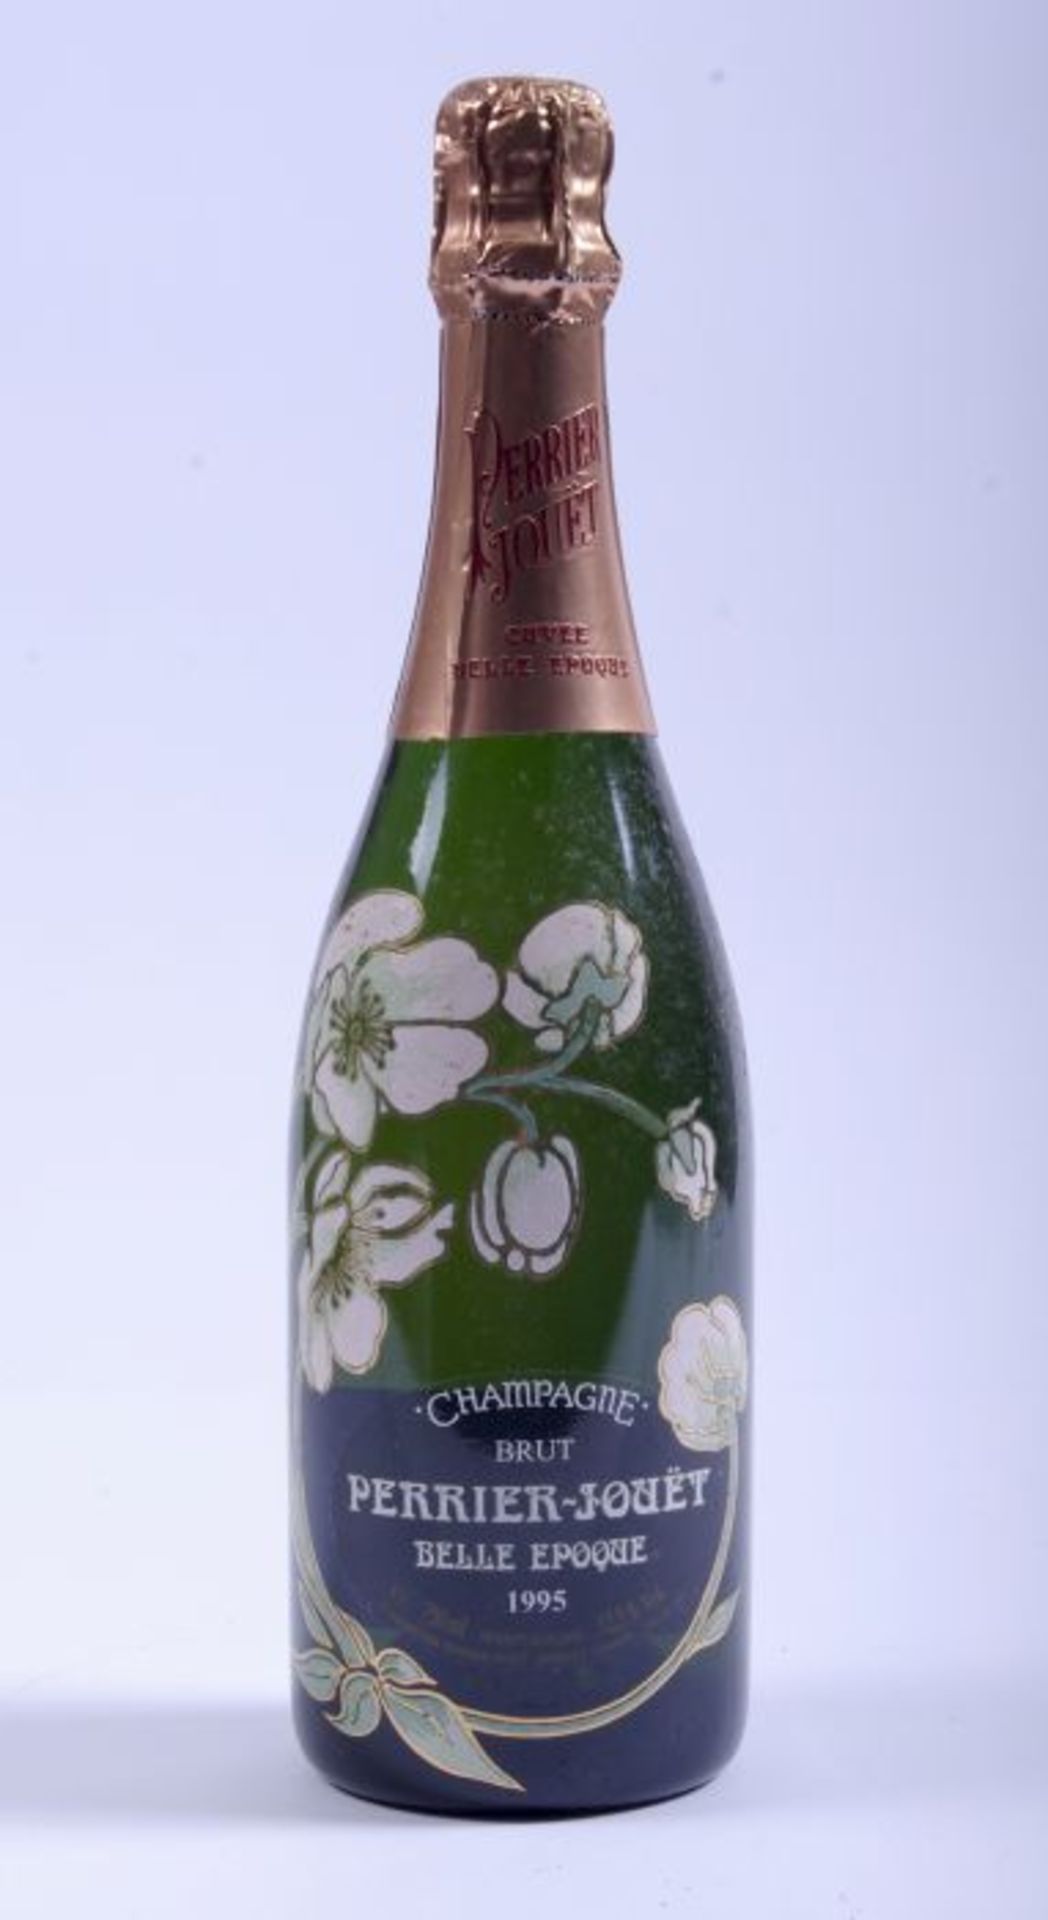 ChampagnerflaschePerrier-Jouet, Belle Epoque, Brut, 1995, 750ml